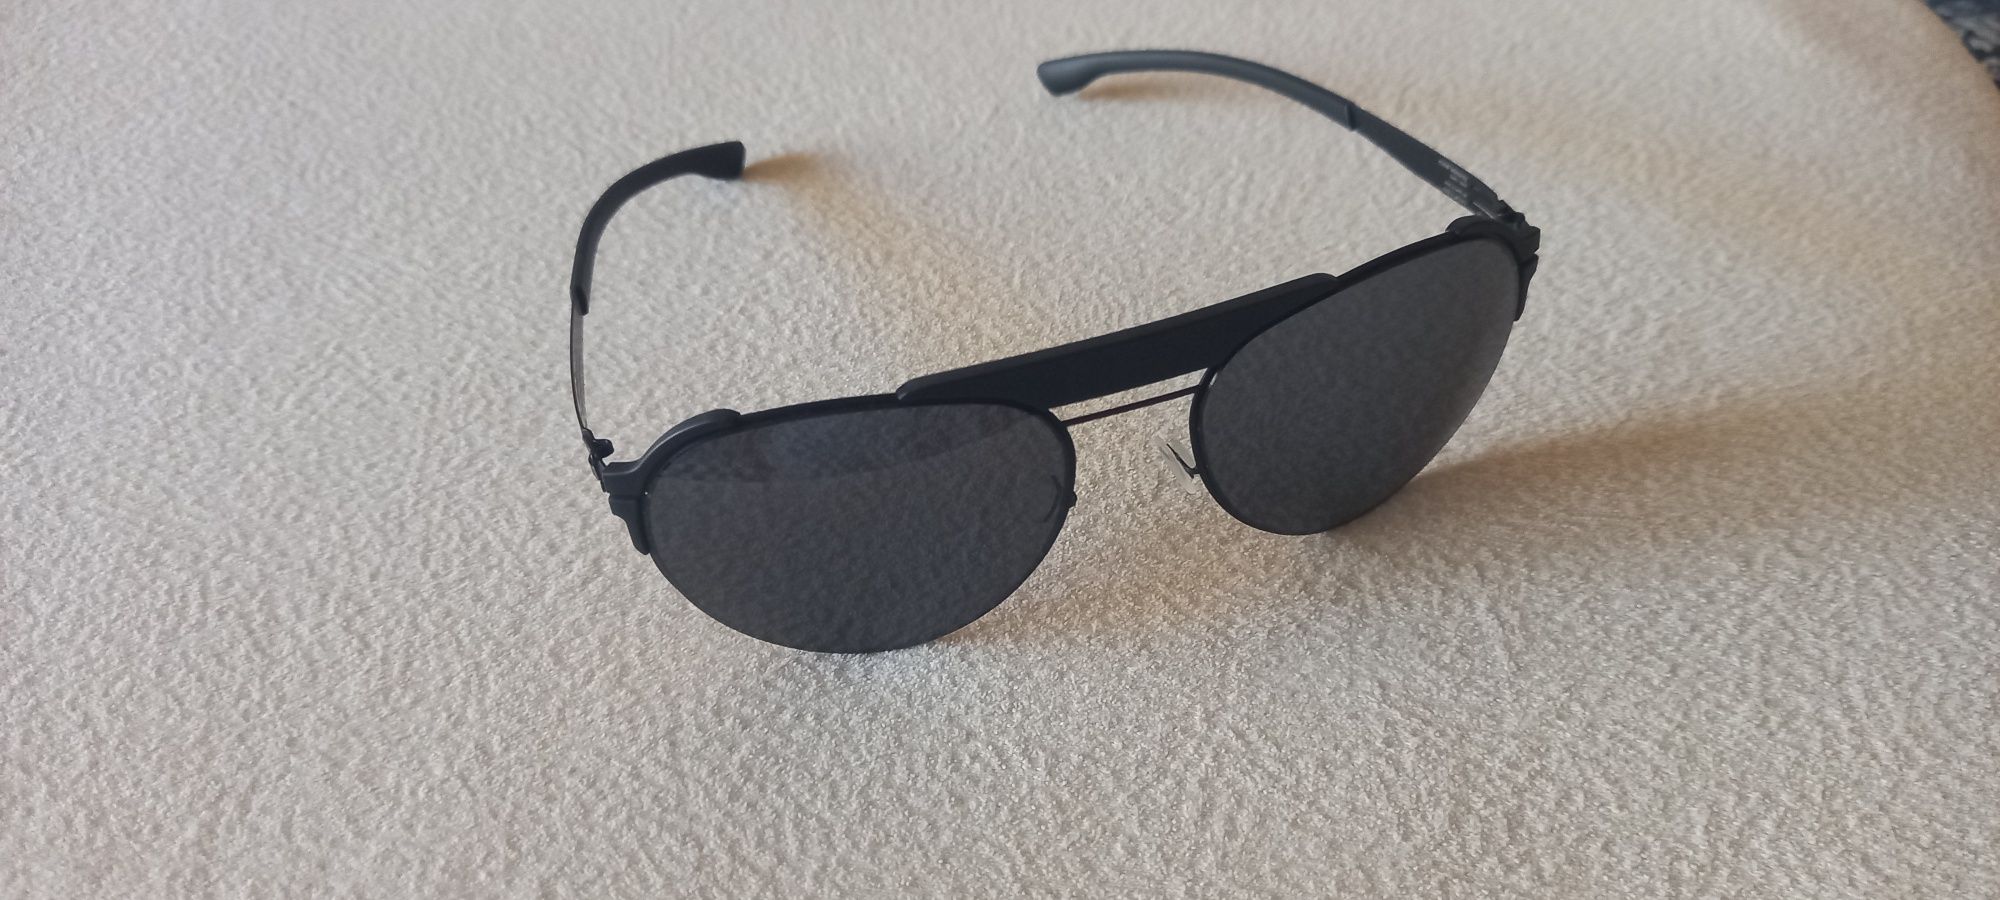 Okulary przeciwsłoneczne ICBerlin Fadeaway black/black